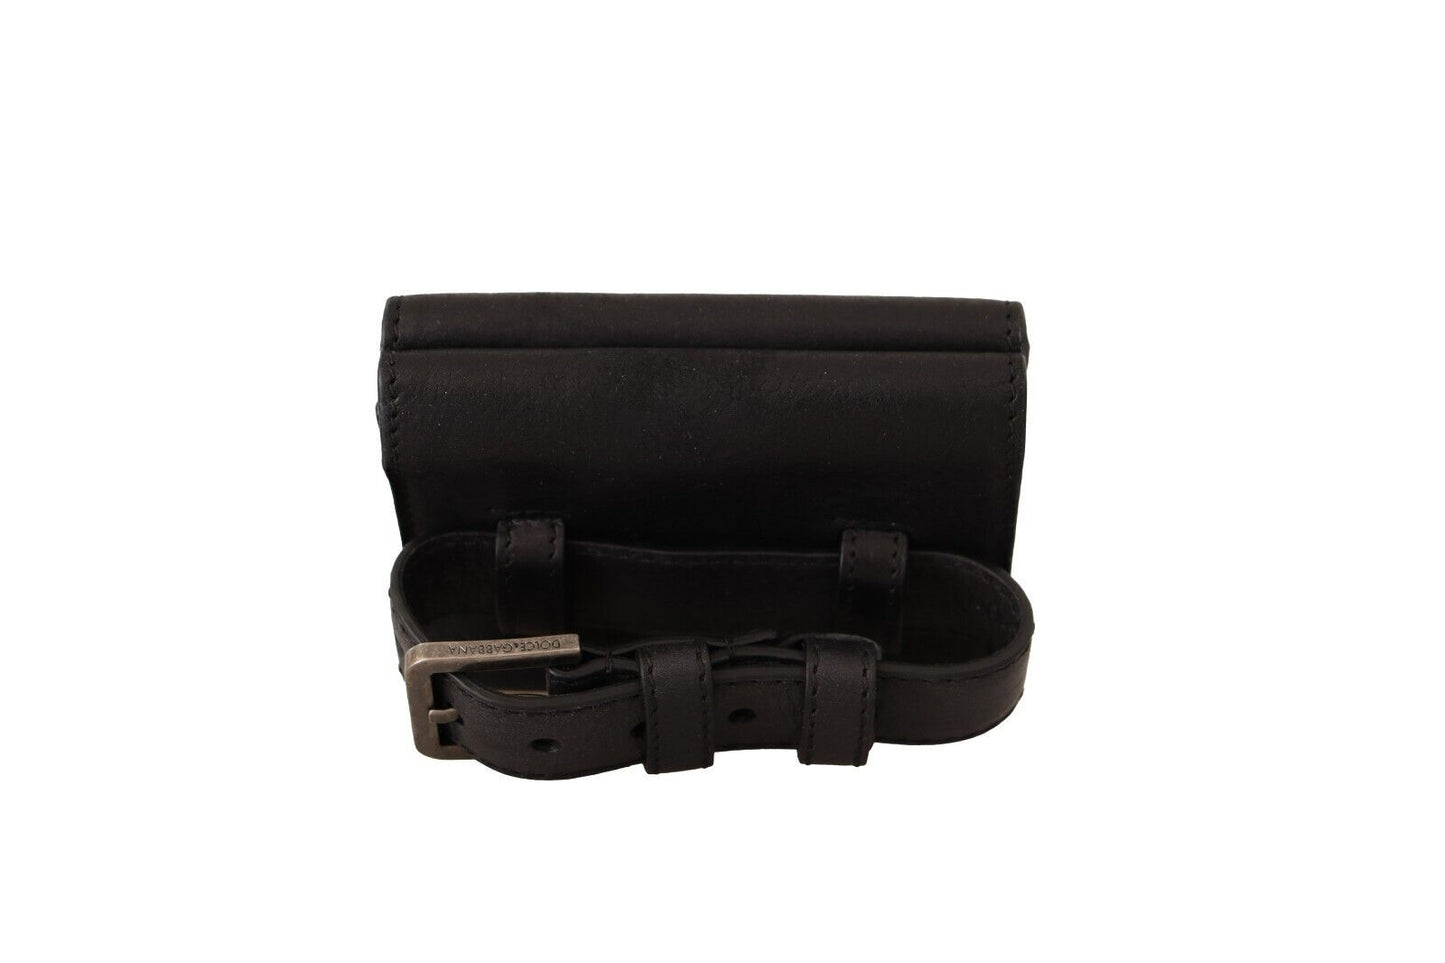 Dolce & Gabbana en cuir noir trifold bourse bourse ceinture multiples portefeuille